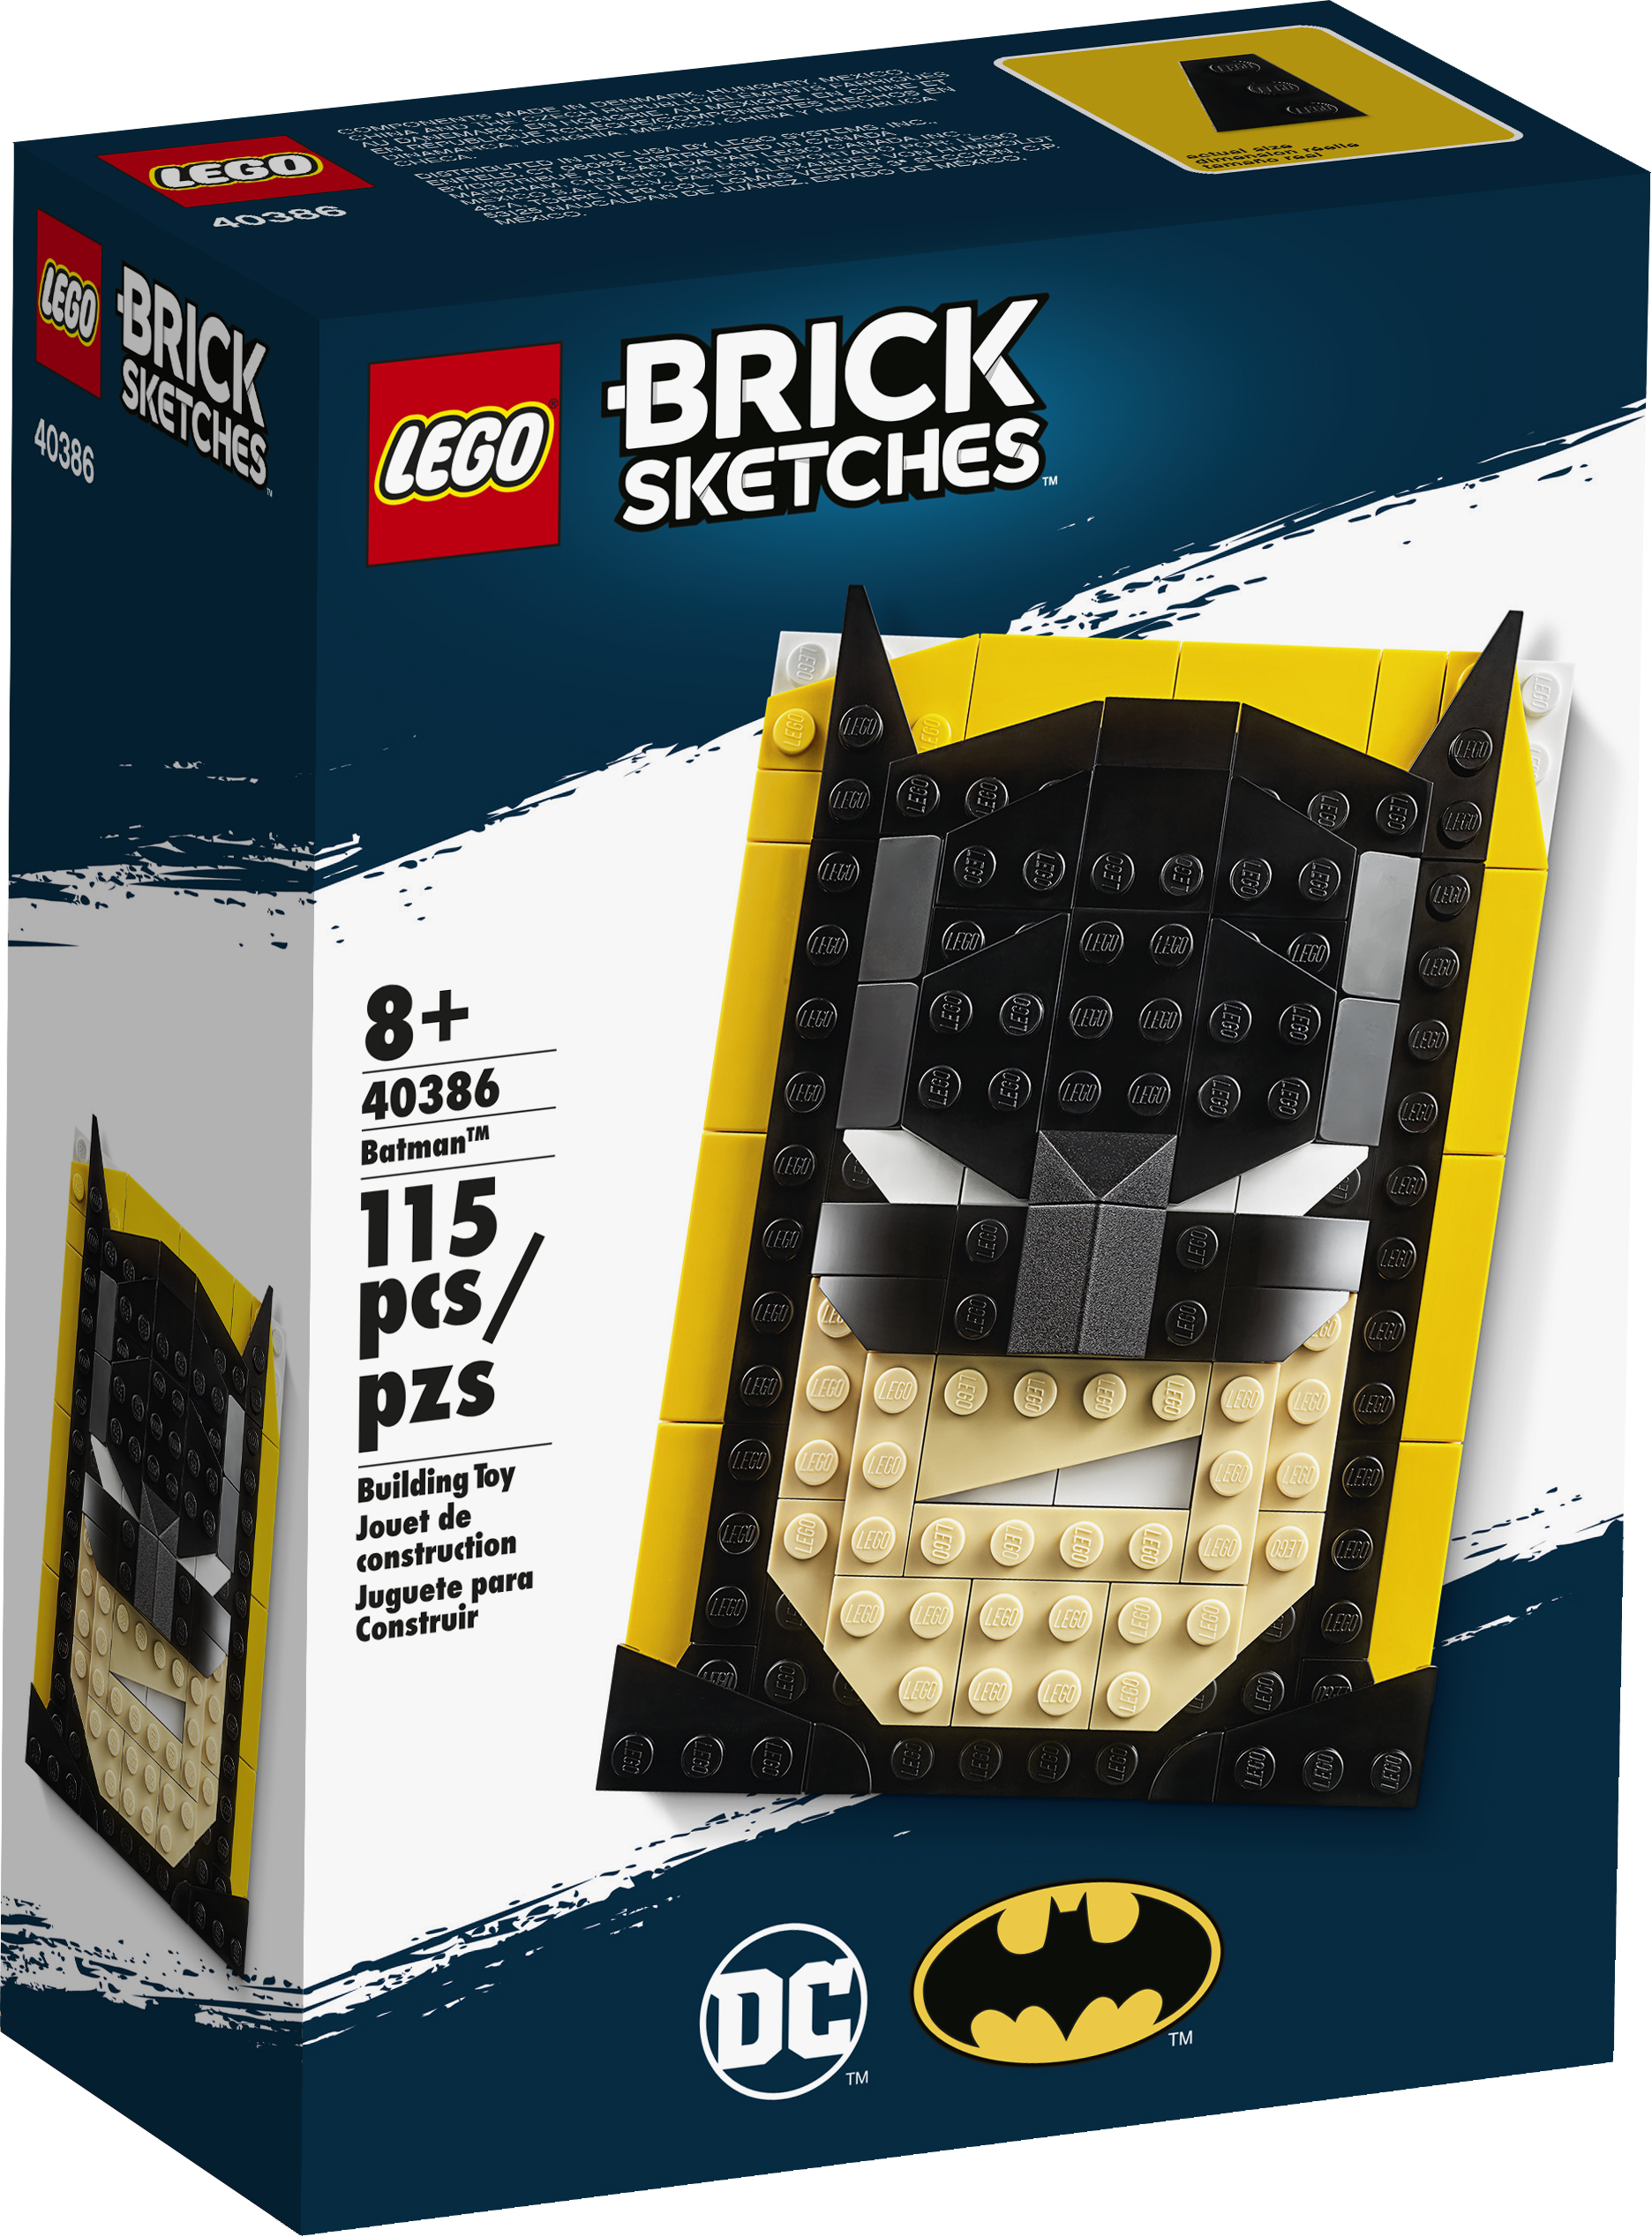 Brick Sketches Batman 1